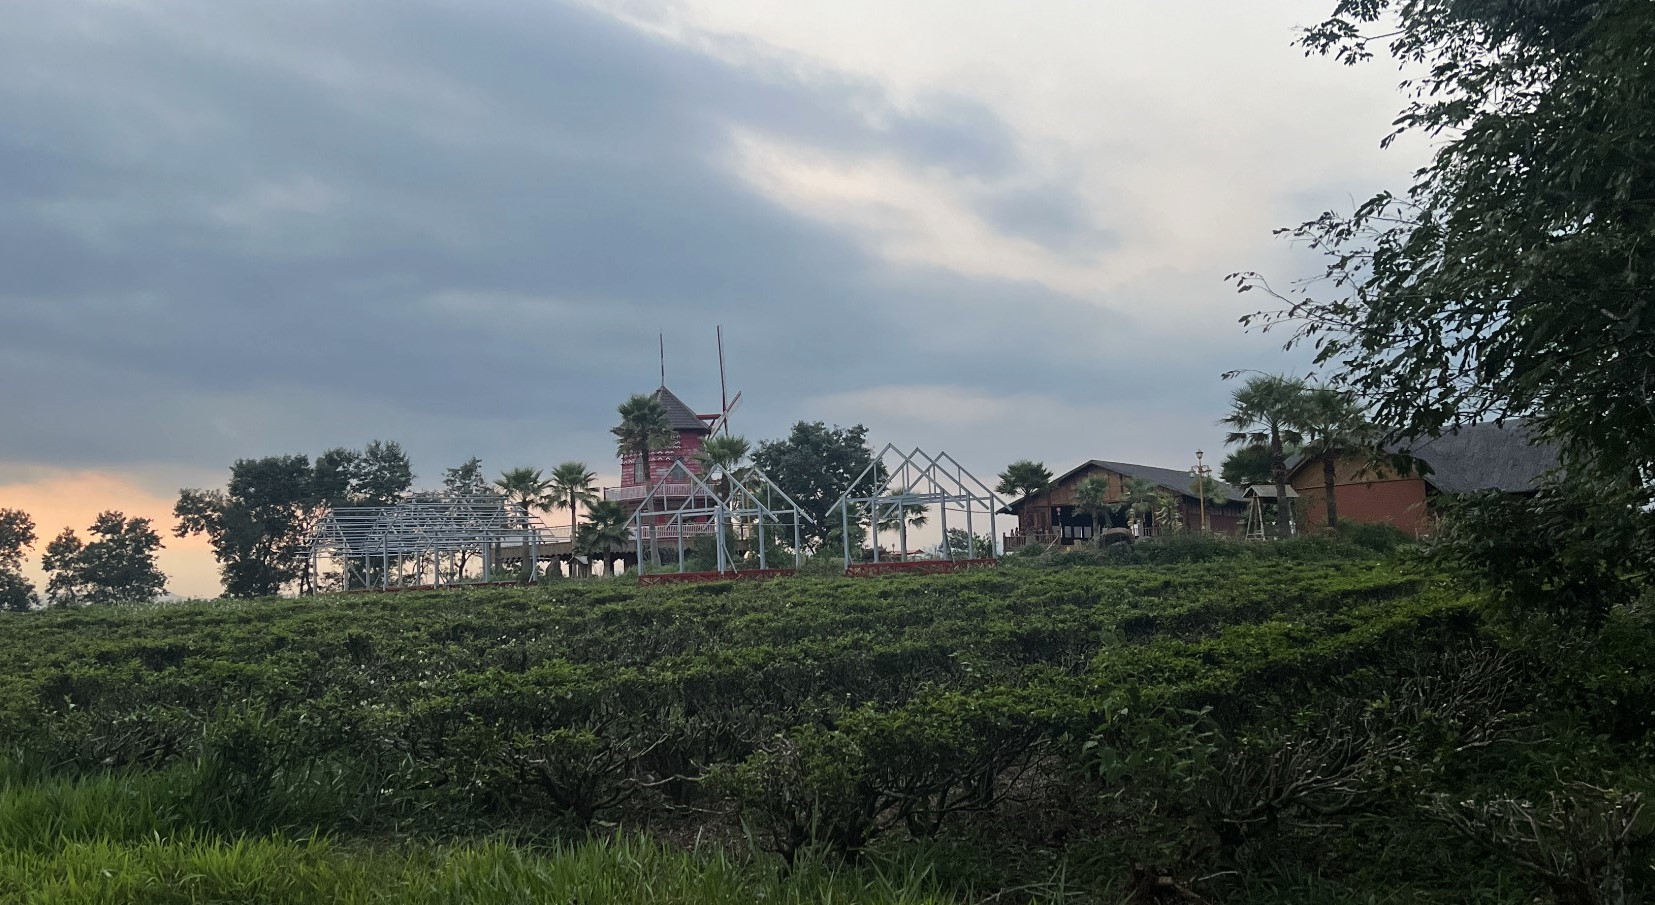 Sau khi được hóa giá vườn cây từ Công ty CP Chè Minh Rồng, một số hộ dân tại thị trấn Lộc Thắng đã vô tư dựng nhà tiền chế trên đất nông nghiệp